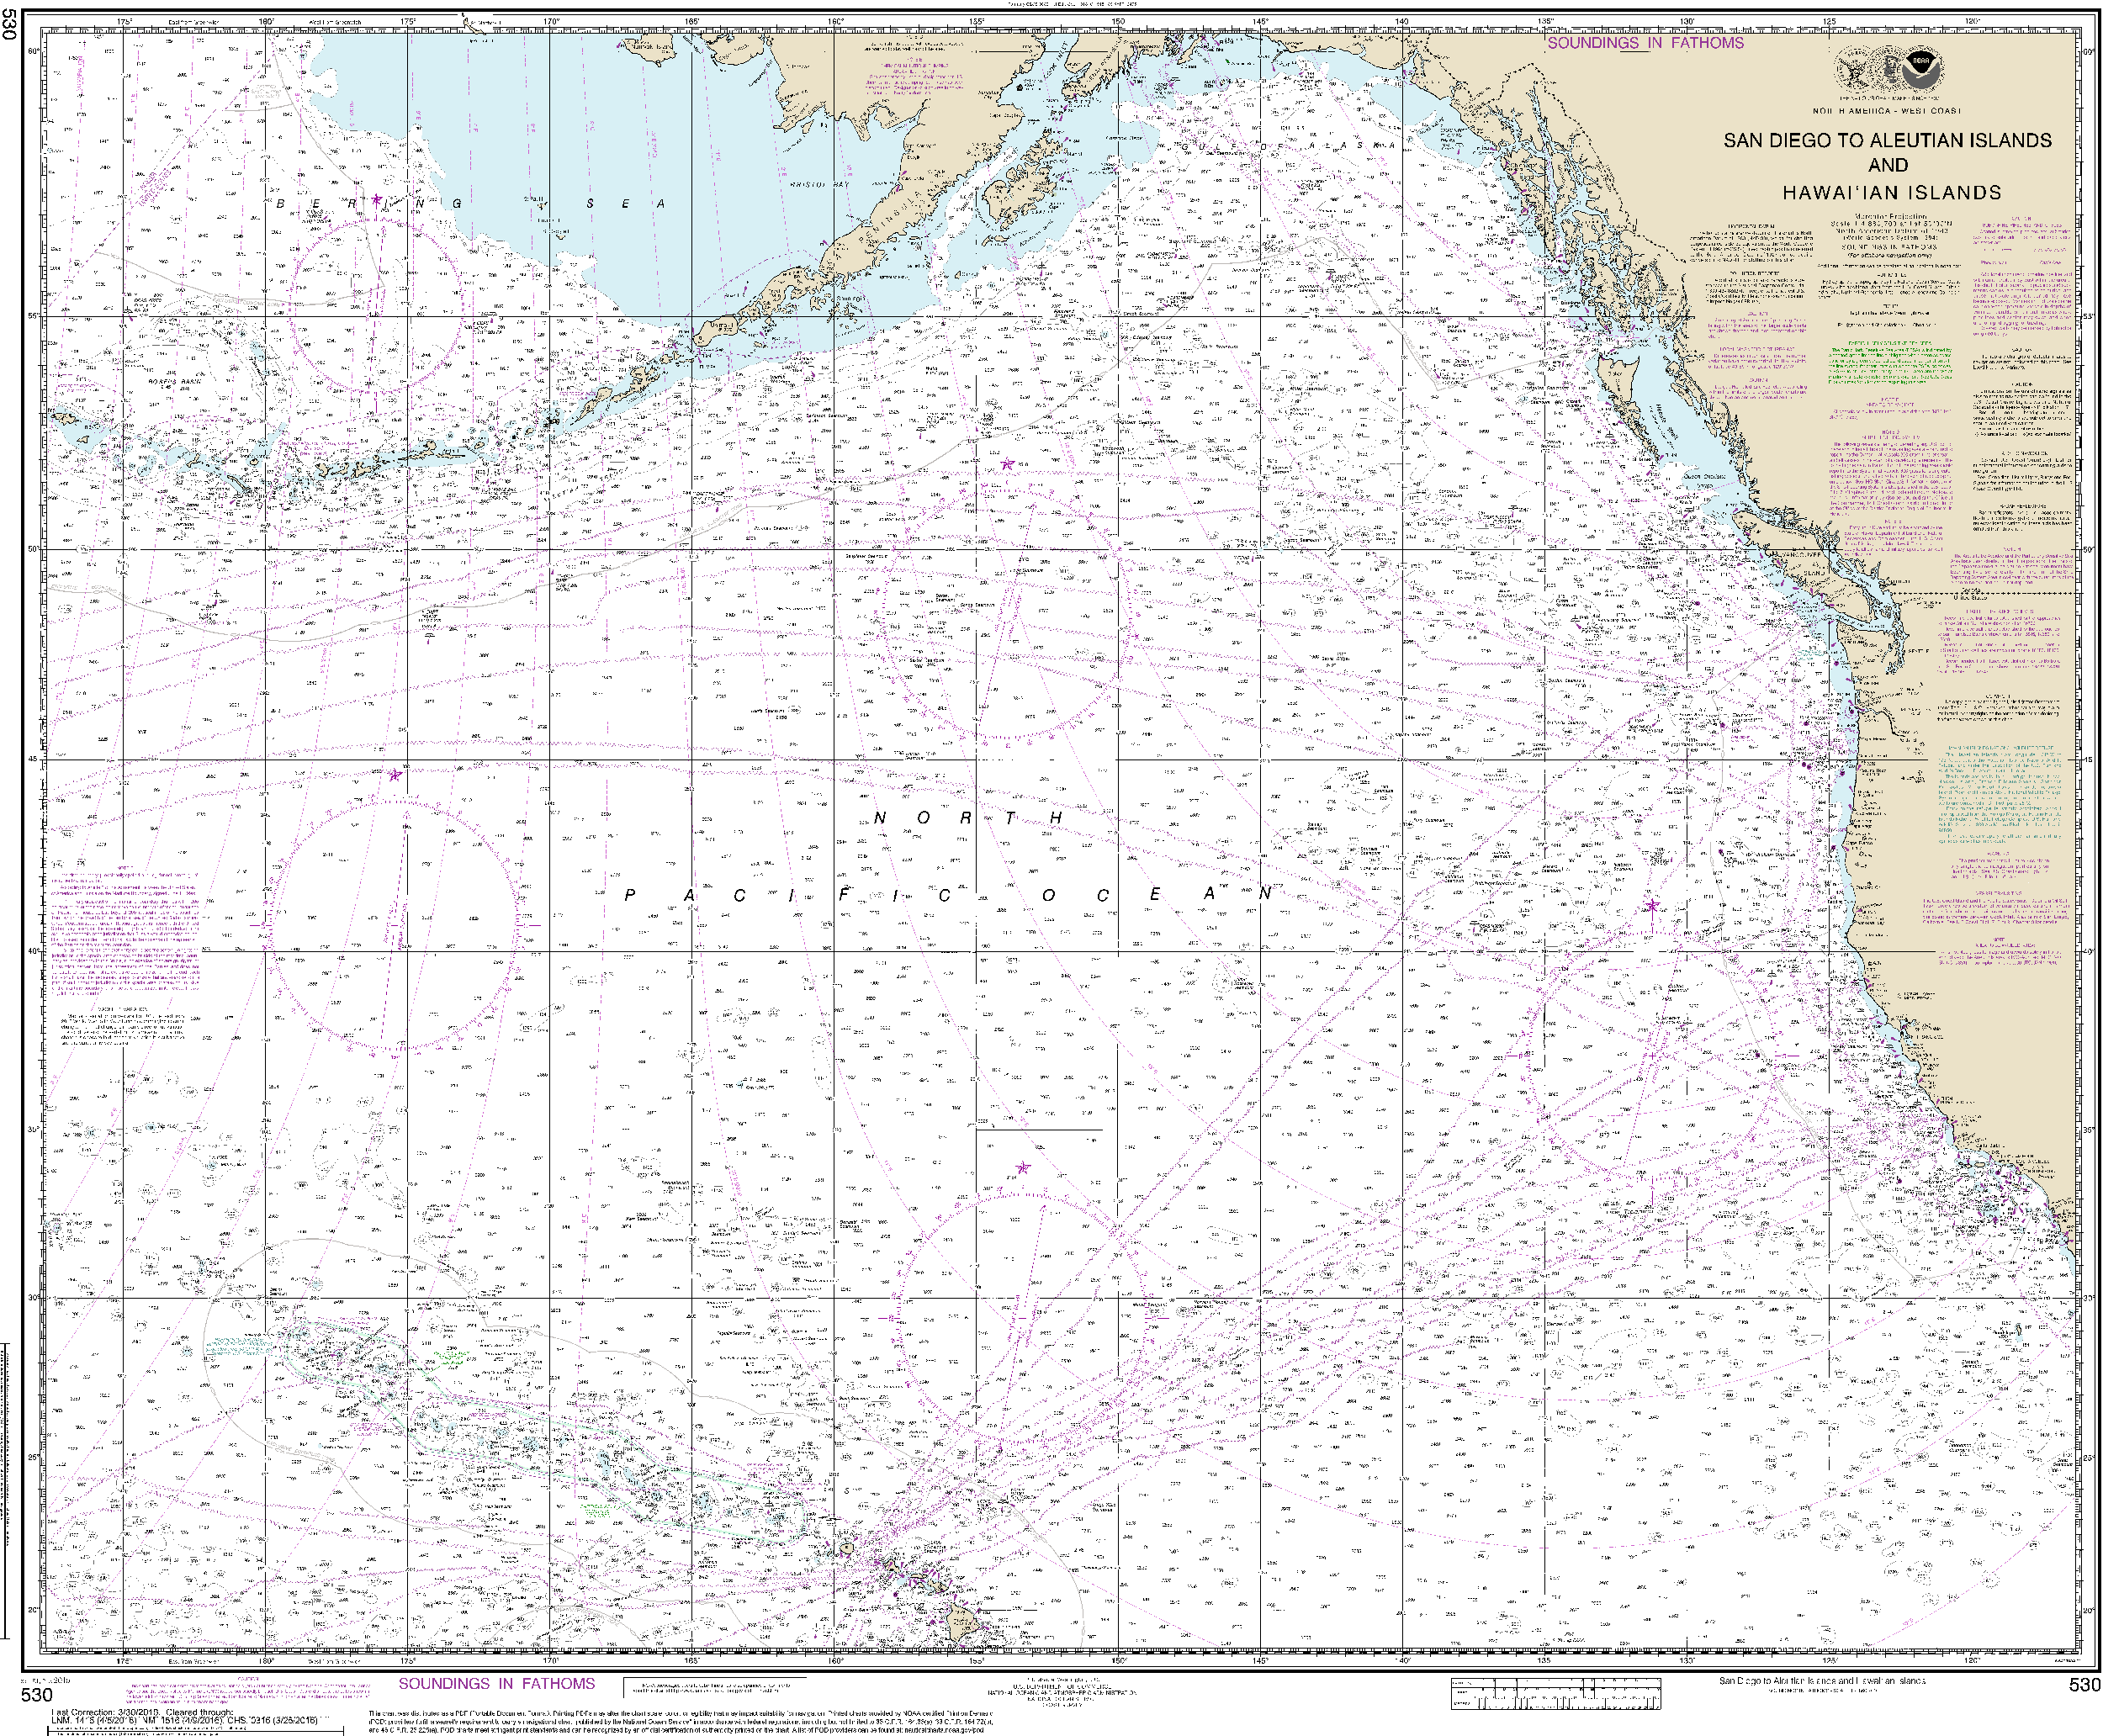 NOAA Nautical Chart 530: North America West Coast San Diego to Aleutian Islands and Hawaiƒ??ian Islands